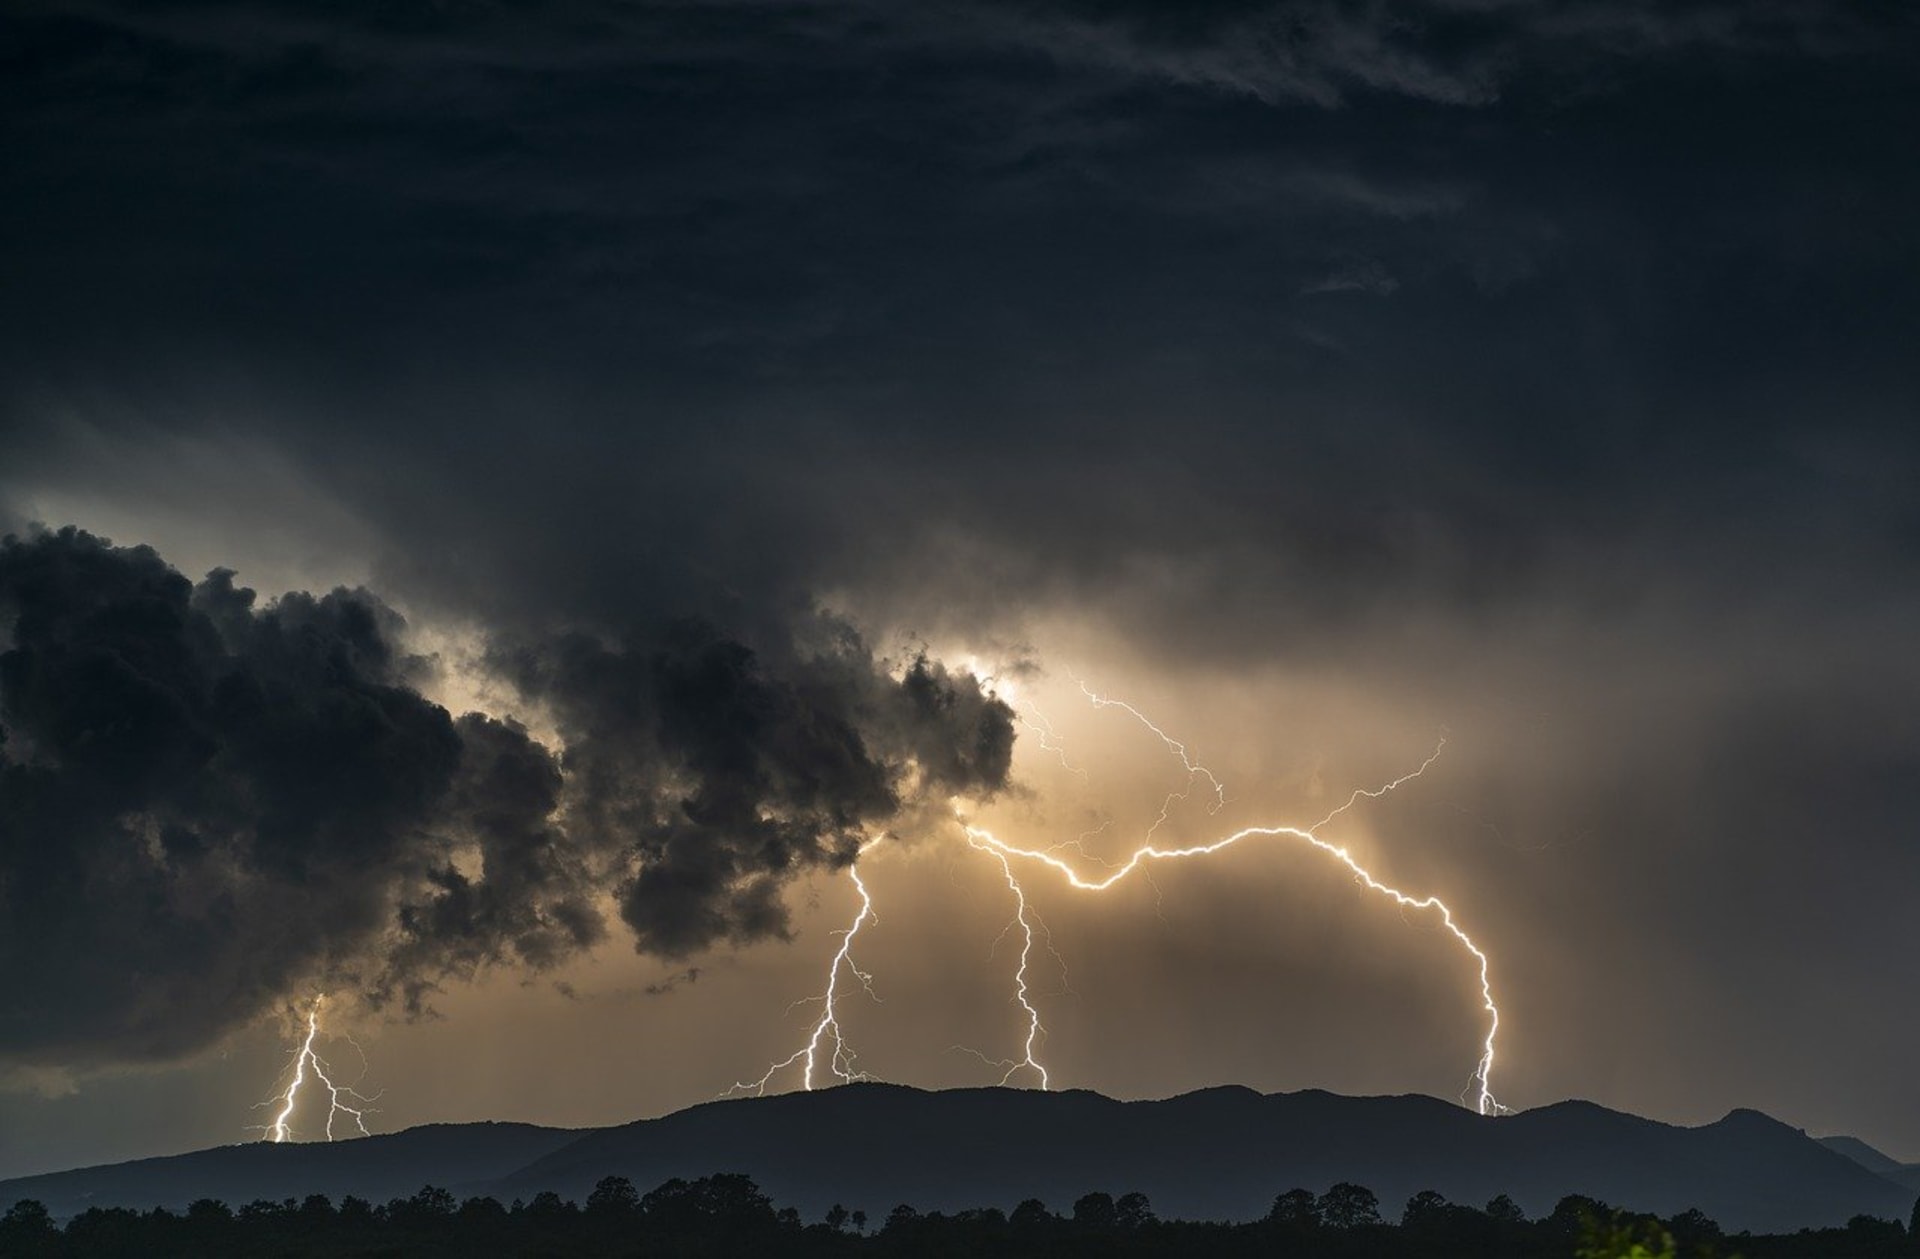 V jihozápadní polovině České republiky v sobotu odpoledne místy udeří bouřky s intenzivním deštěm. (Ilustrační foto)